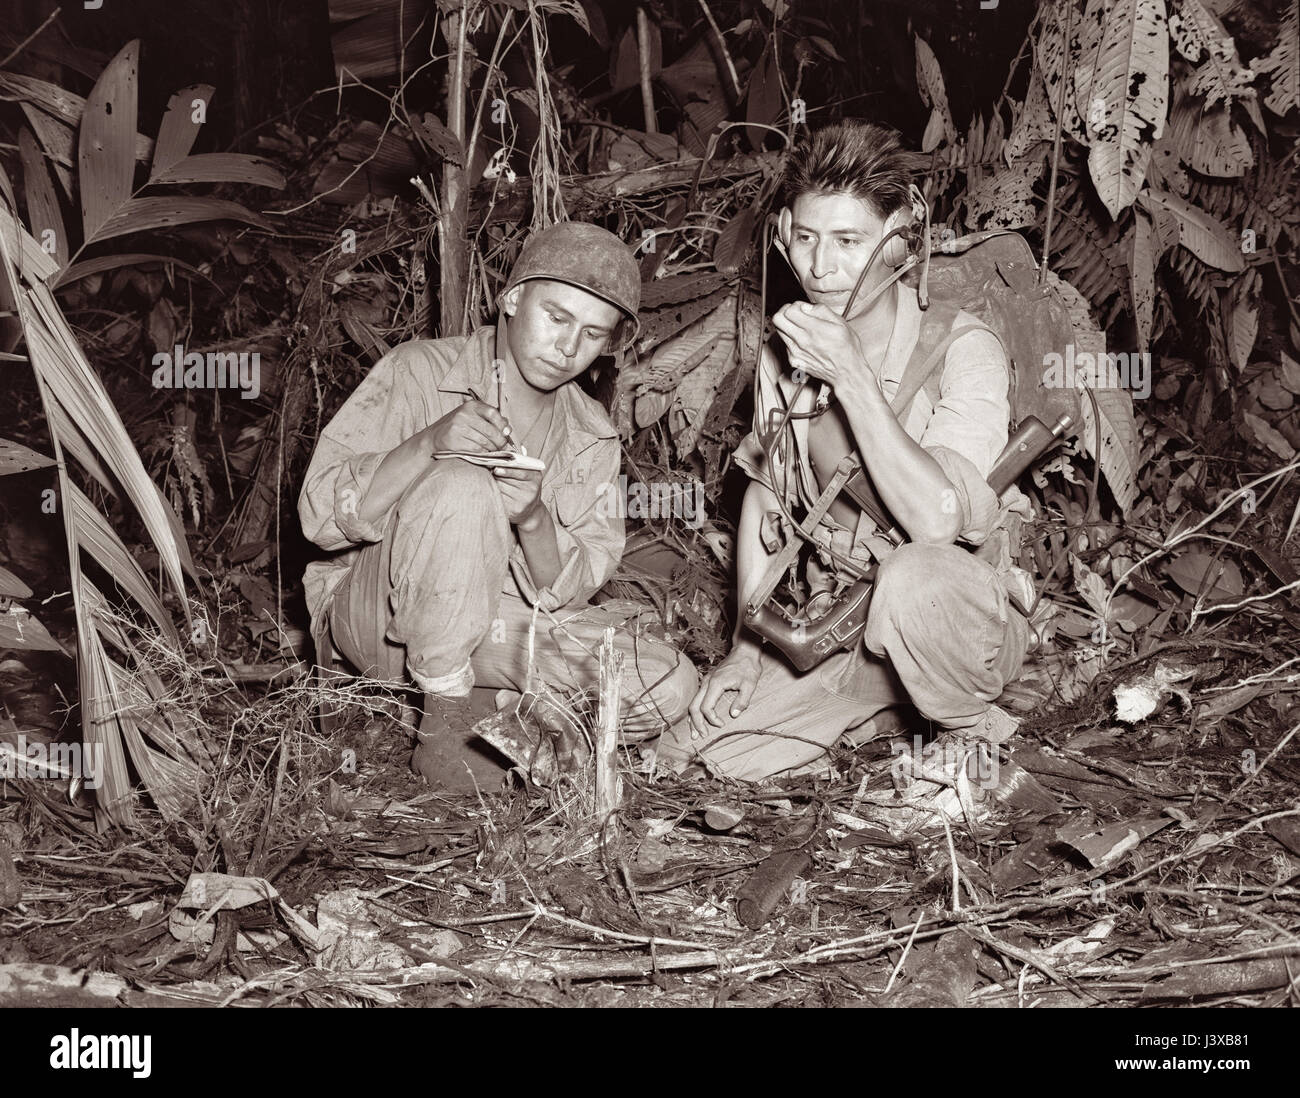 Navajo Code Talkers bei Bougainville im Dezember 1943 während des zweiten Weltkriegs. Betreiben Sie Korporal Henry Backen Jr (links) und Private First Class George H Kirk (rechts), serviert mit einer Marine Signaleinheit, ein tragbares Radio inmitten einer Lichtung, die sie in den dichten Dschungel nahe hinter den Frontlinien gehackt habe. Stockfoto